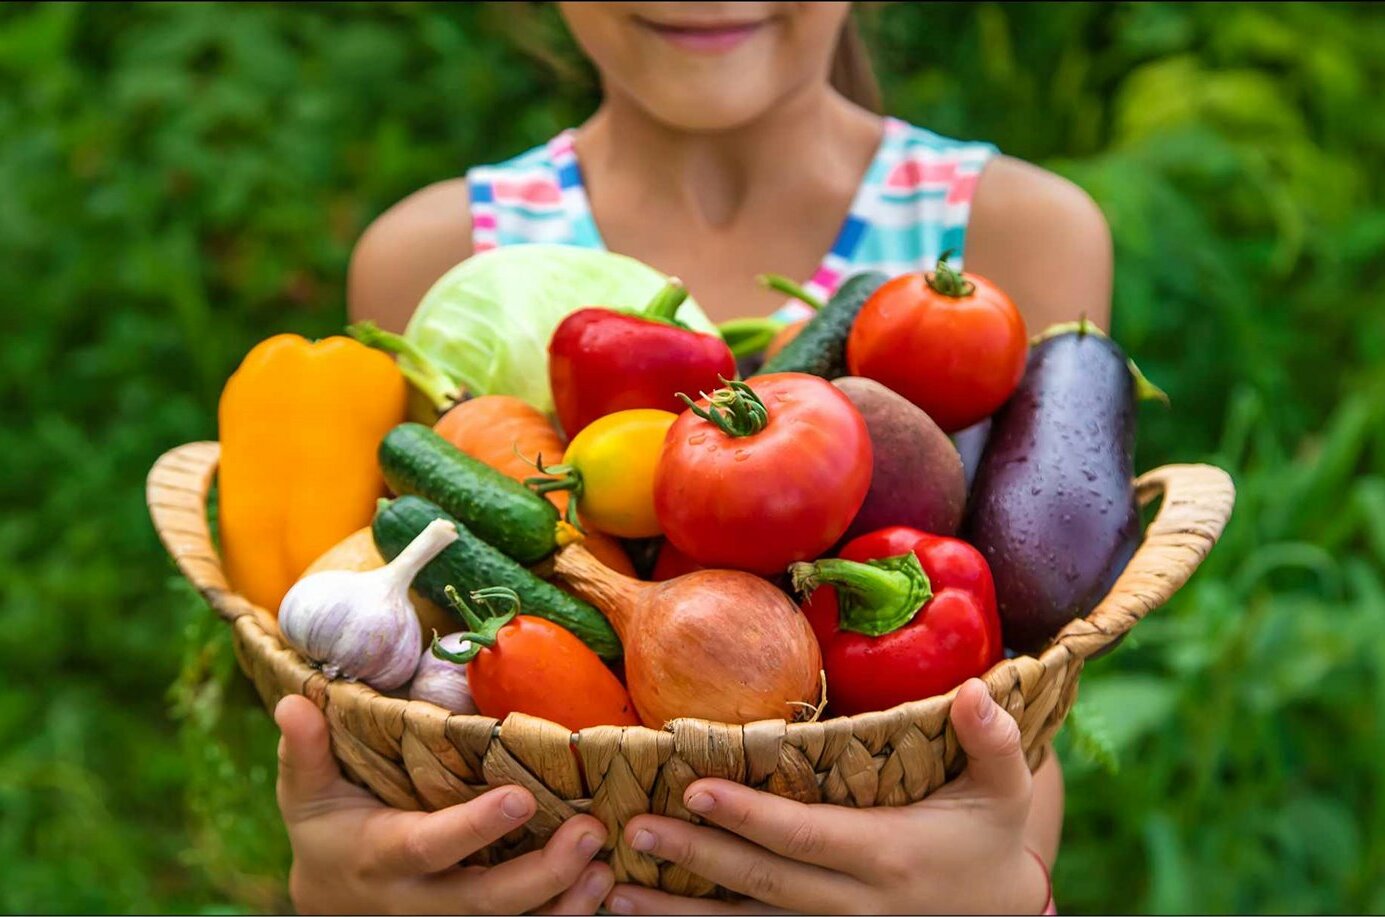 BITTE ZUGREIFEN:  In Obst und Gemüse stecken viele der Vitamine, die unser Immunsystem braucht.
 Foto: TXN/Barmenia/yanadjana